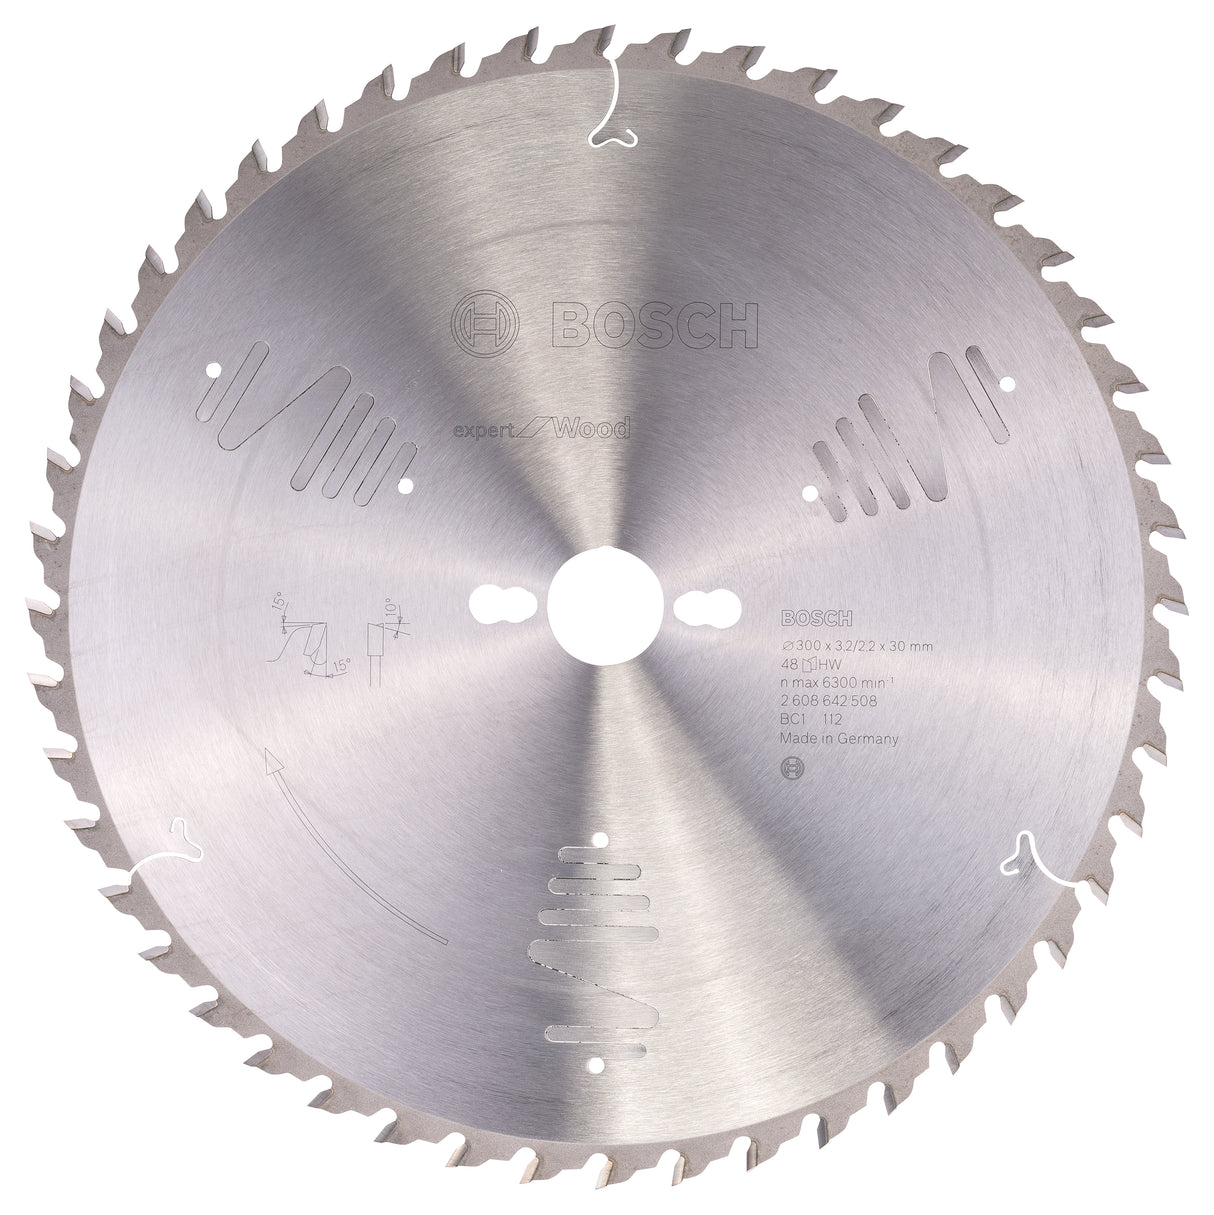 Bosch Professional Expert Circular Saw Blade for Wood - 300 x 30 x 3.2 mm, 48 Teeth